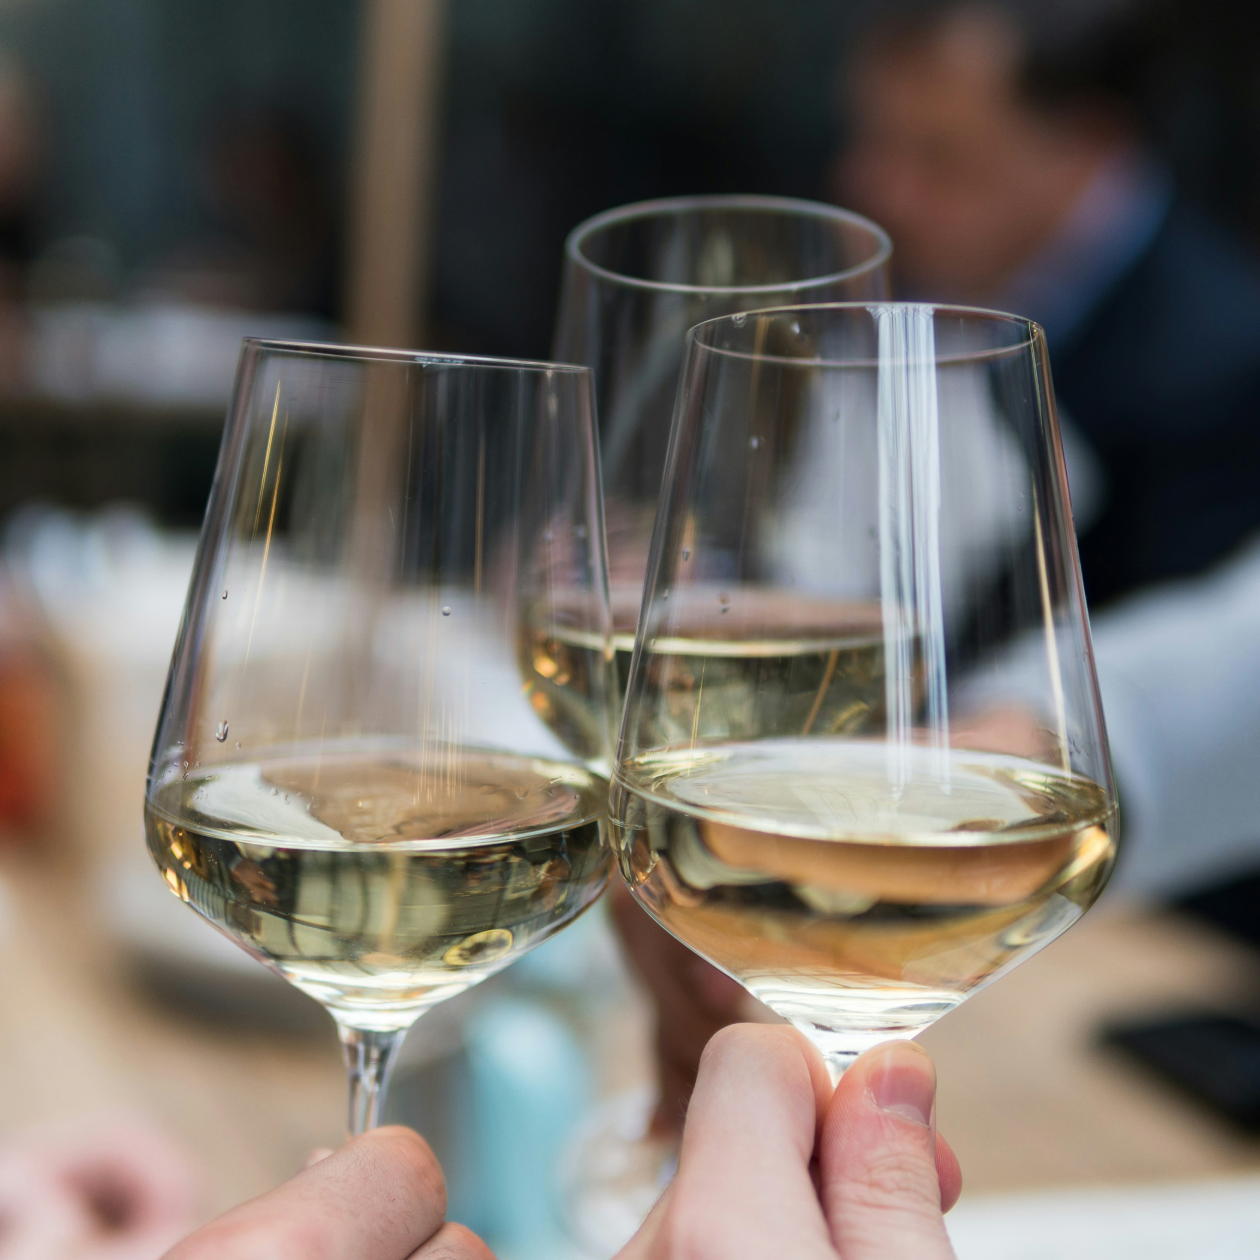 Cheersing glasses of white wine